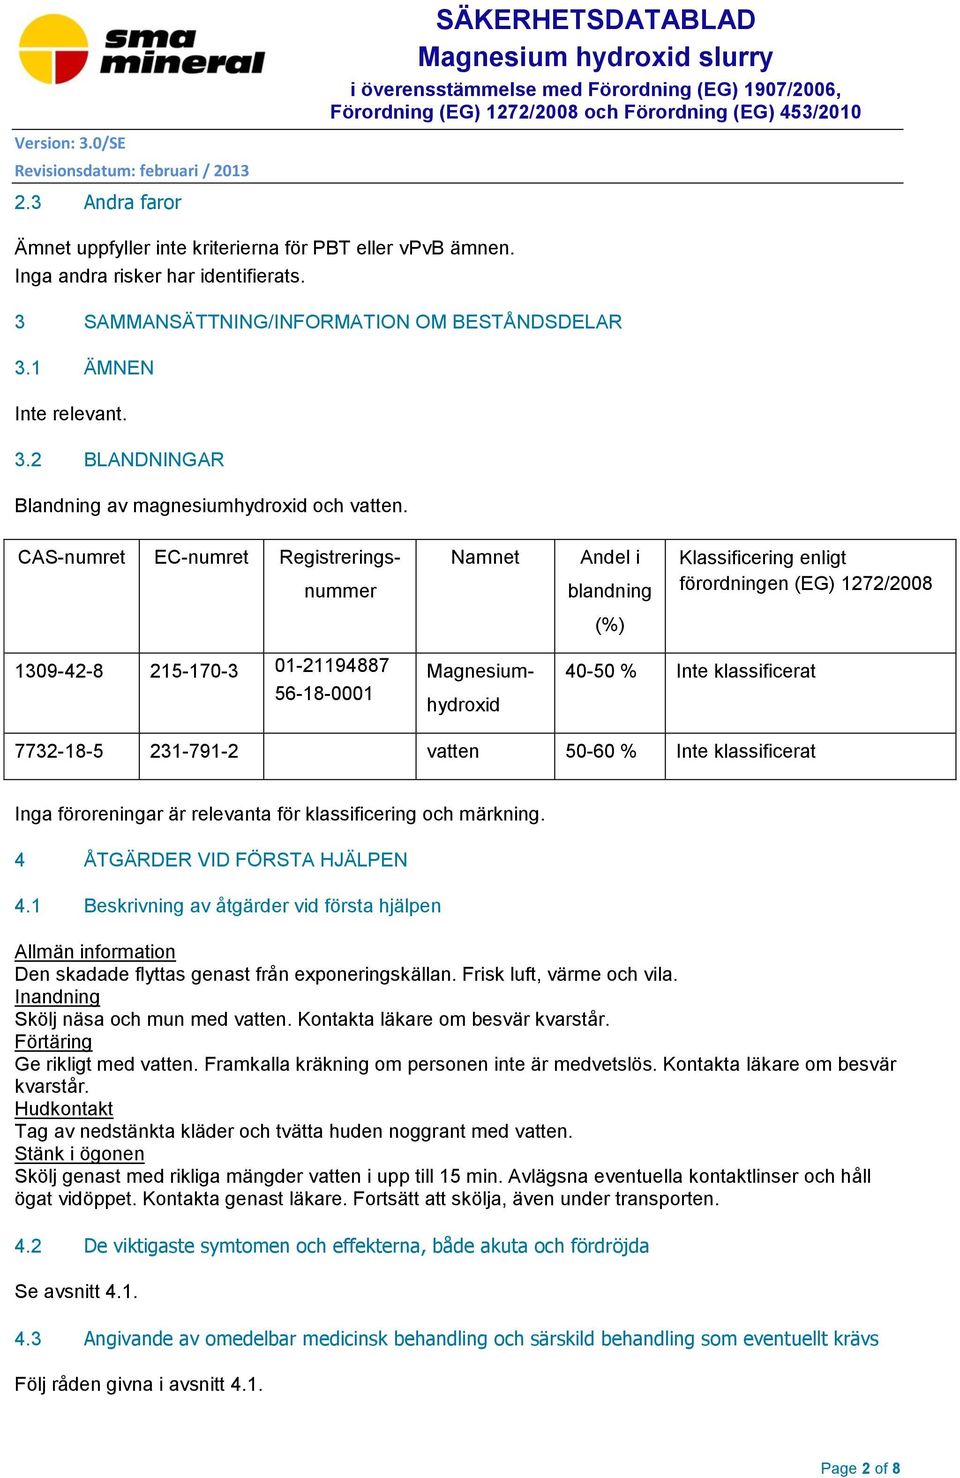 CAS-numret EC-numret Registreringsnummer Namnet Andel i blandning Klassificering enligt förordningen (EG) 1272/2008 (%) 1309-42-8 215-170-3 01-21194887 56-18-0001 Magnesiumhydroxid 40-50 % Inte